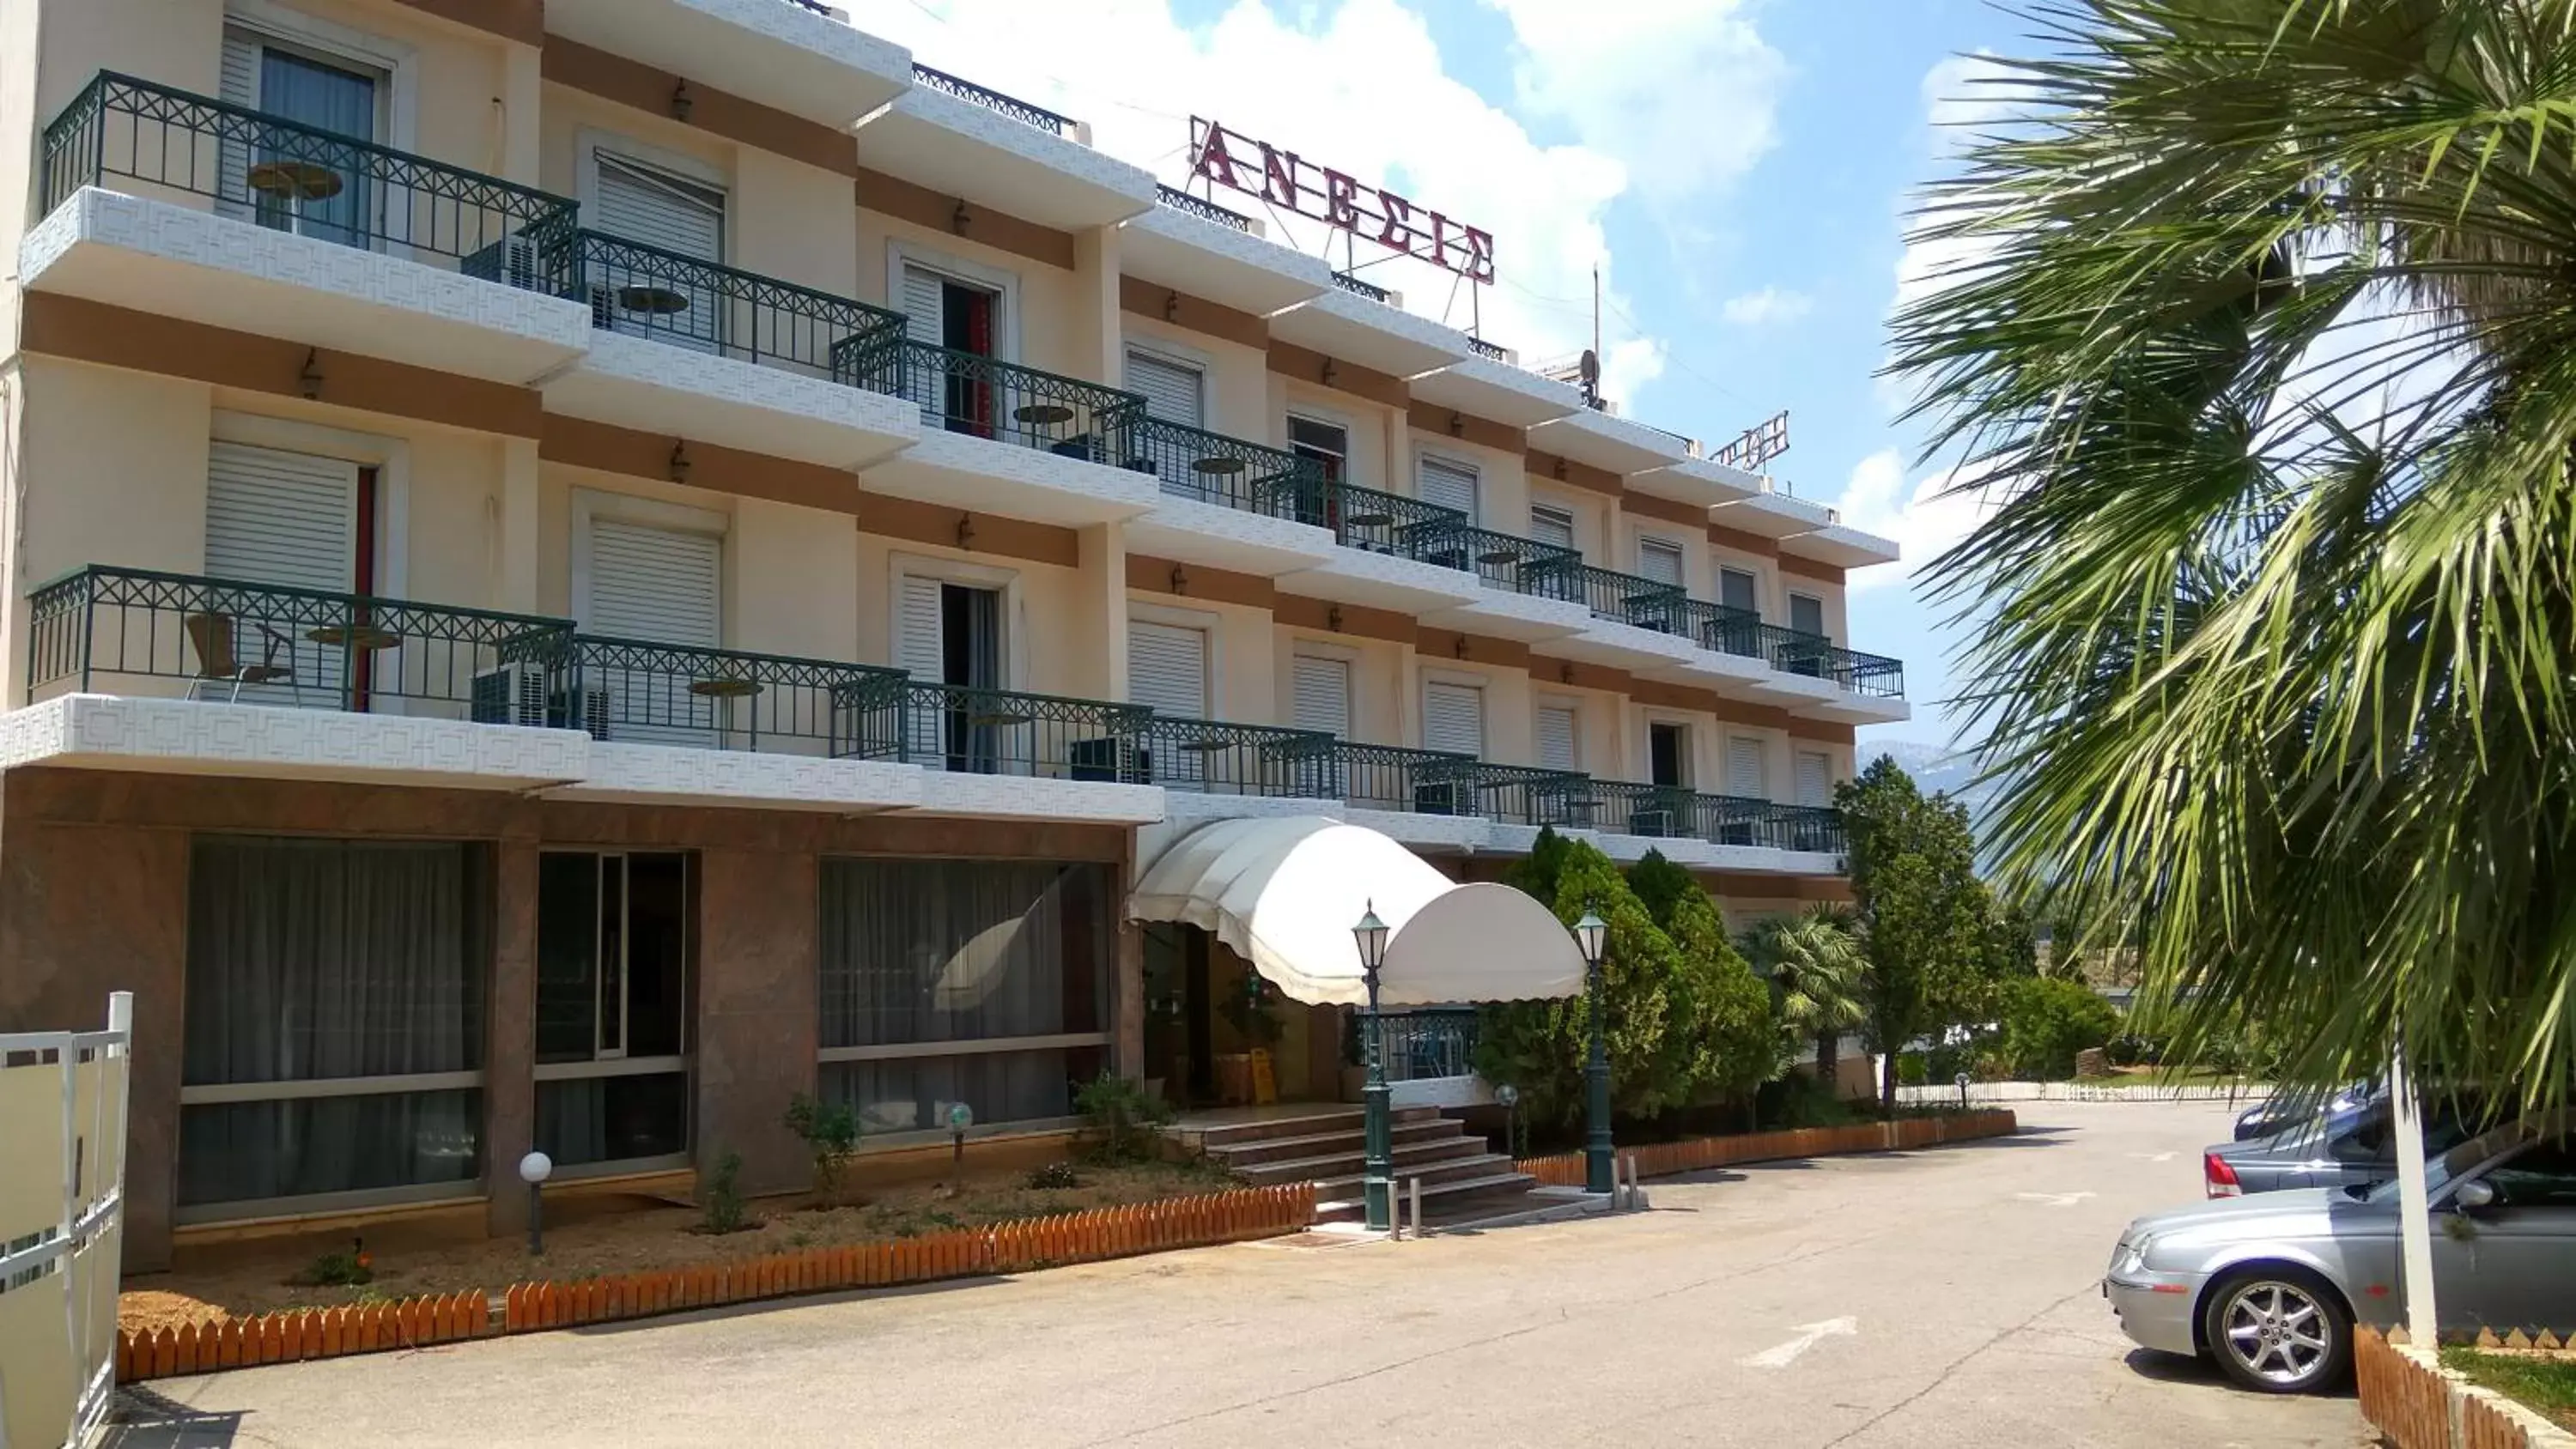 Facade/entrance, Property Building in Hotel Anesi